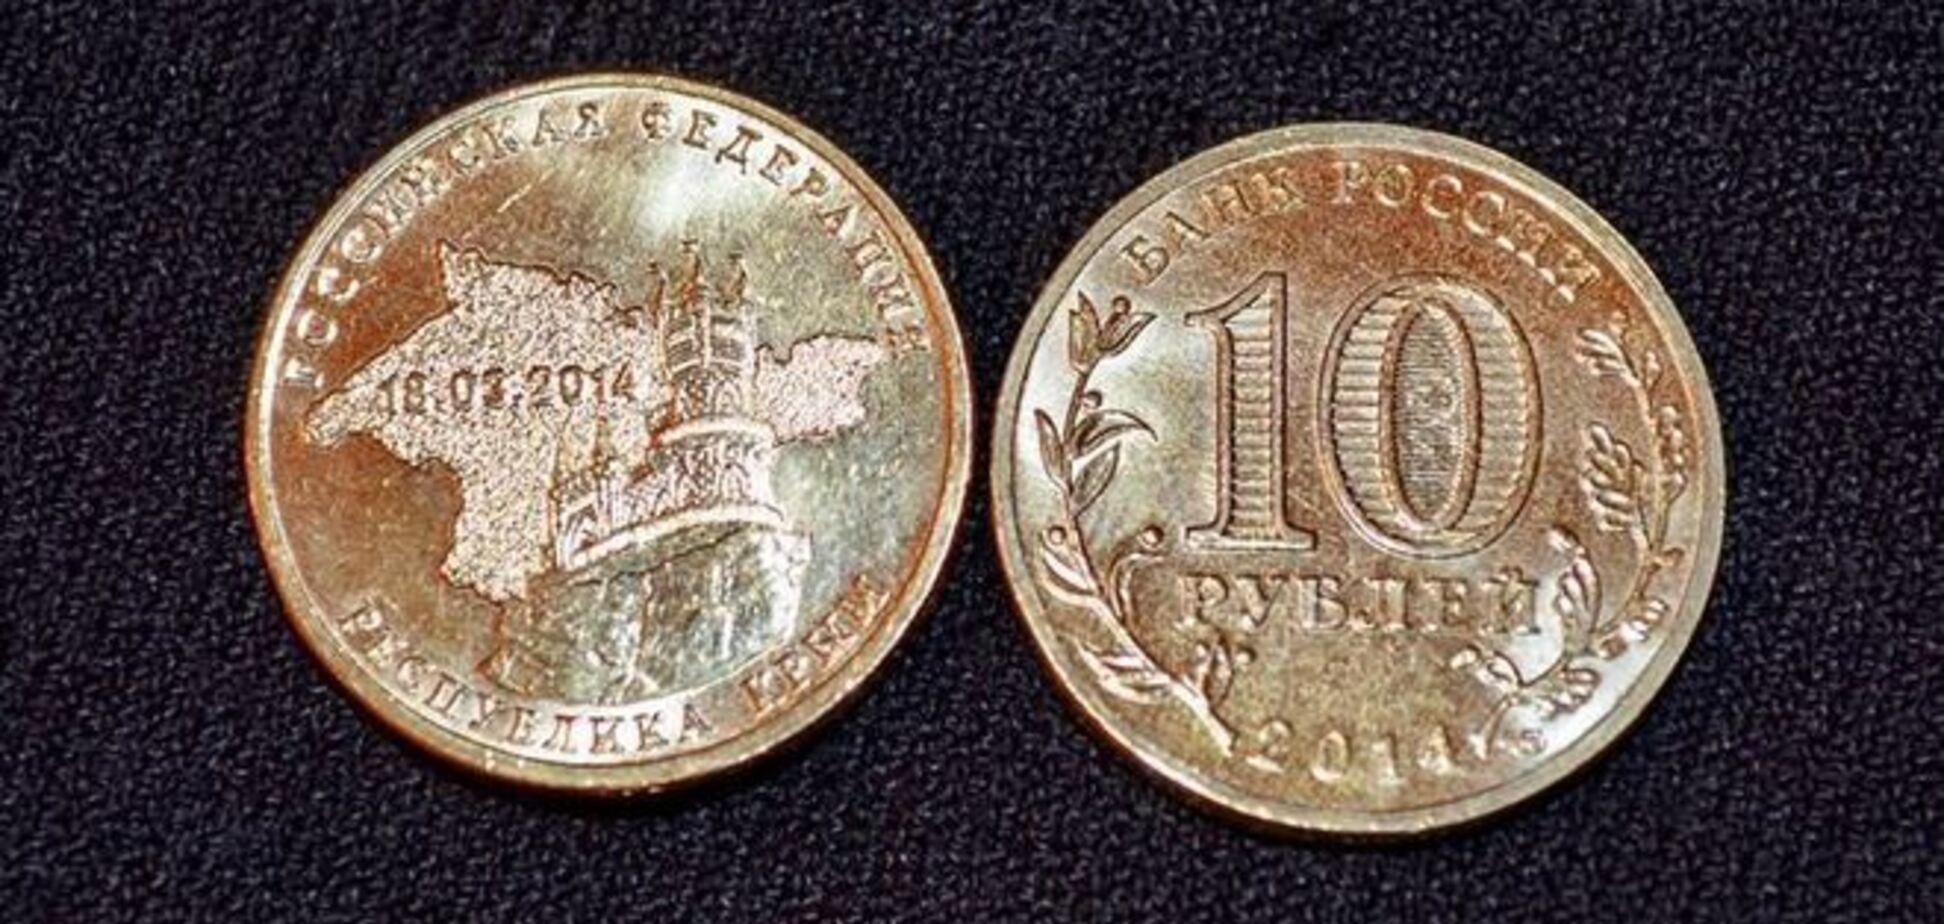 Крымчане получили зарплату монетами с памяткой об аннексии полуострова